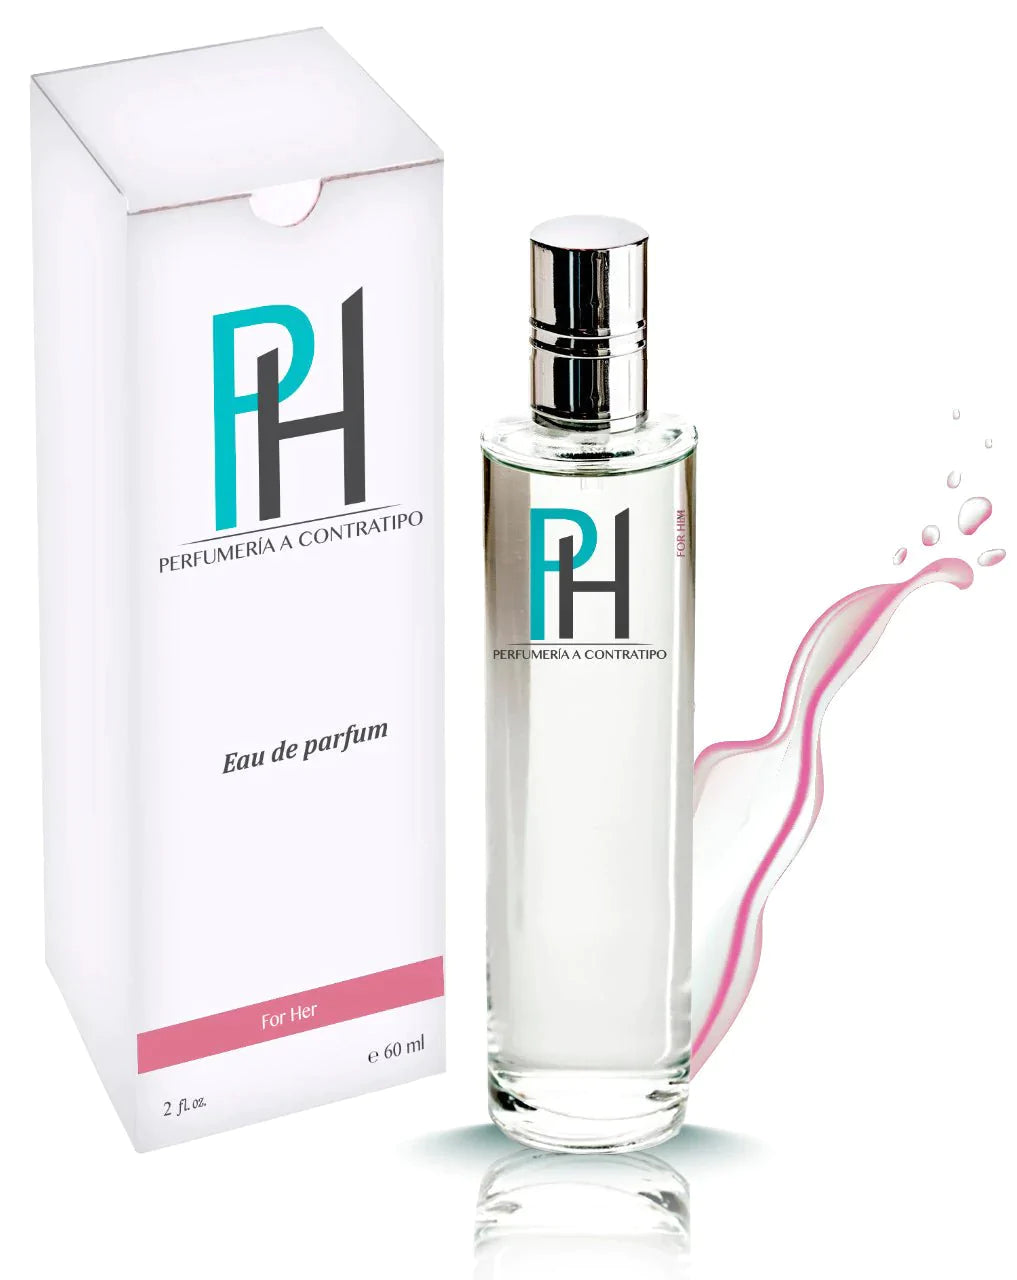 Perfume 212 Vip Rose De 60 ml - PH Perfumería a Contratipo